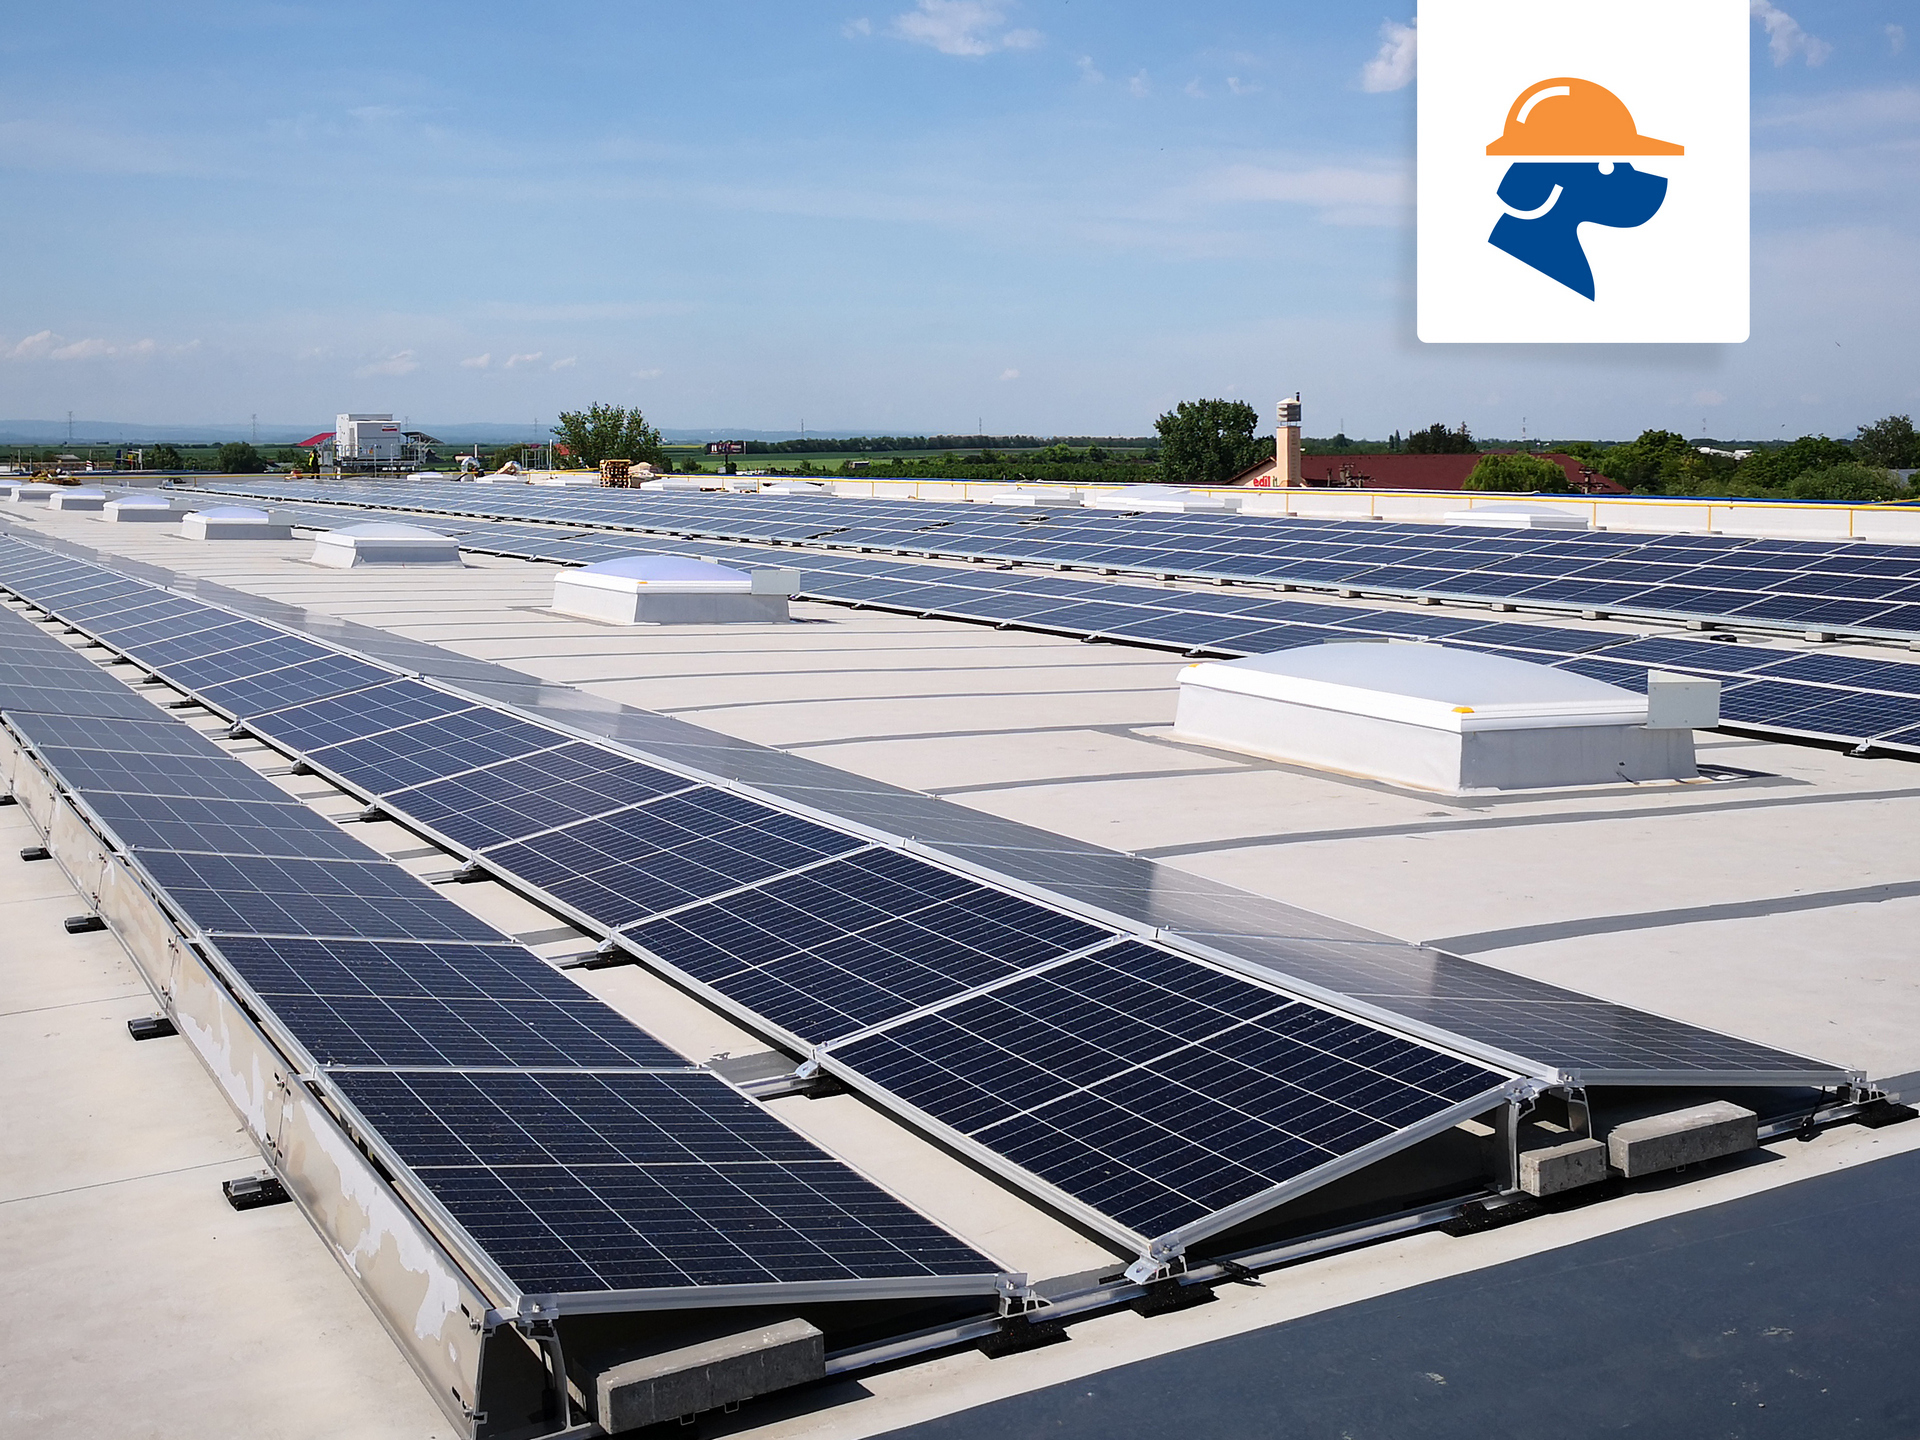 Mişcare surpriză de la cel mai puternic grup antreprenorial din România: Dedeman trece pe energie verde şi instalează centrale electrice fotovoltaice pe acoperişurile magazinelor proprii